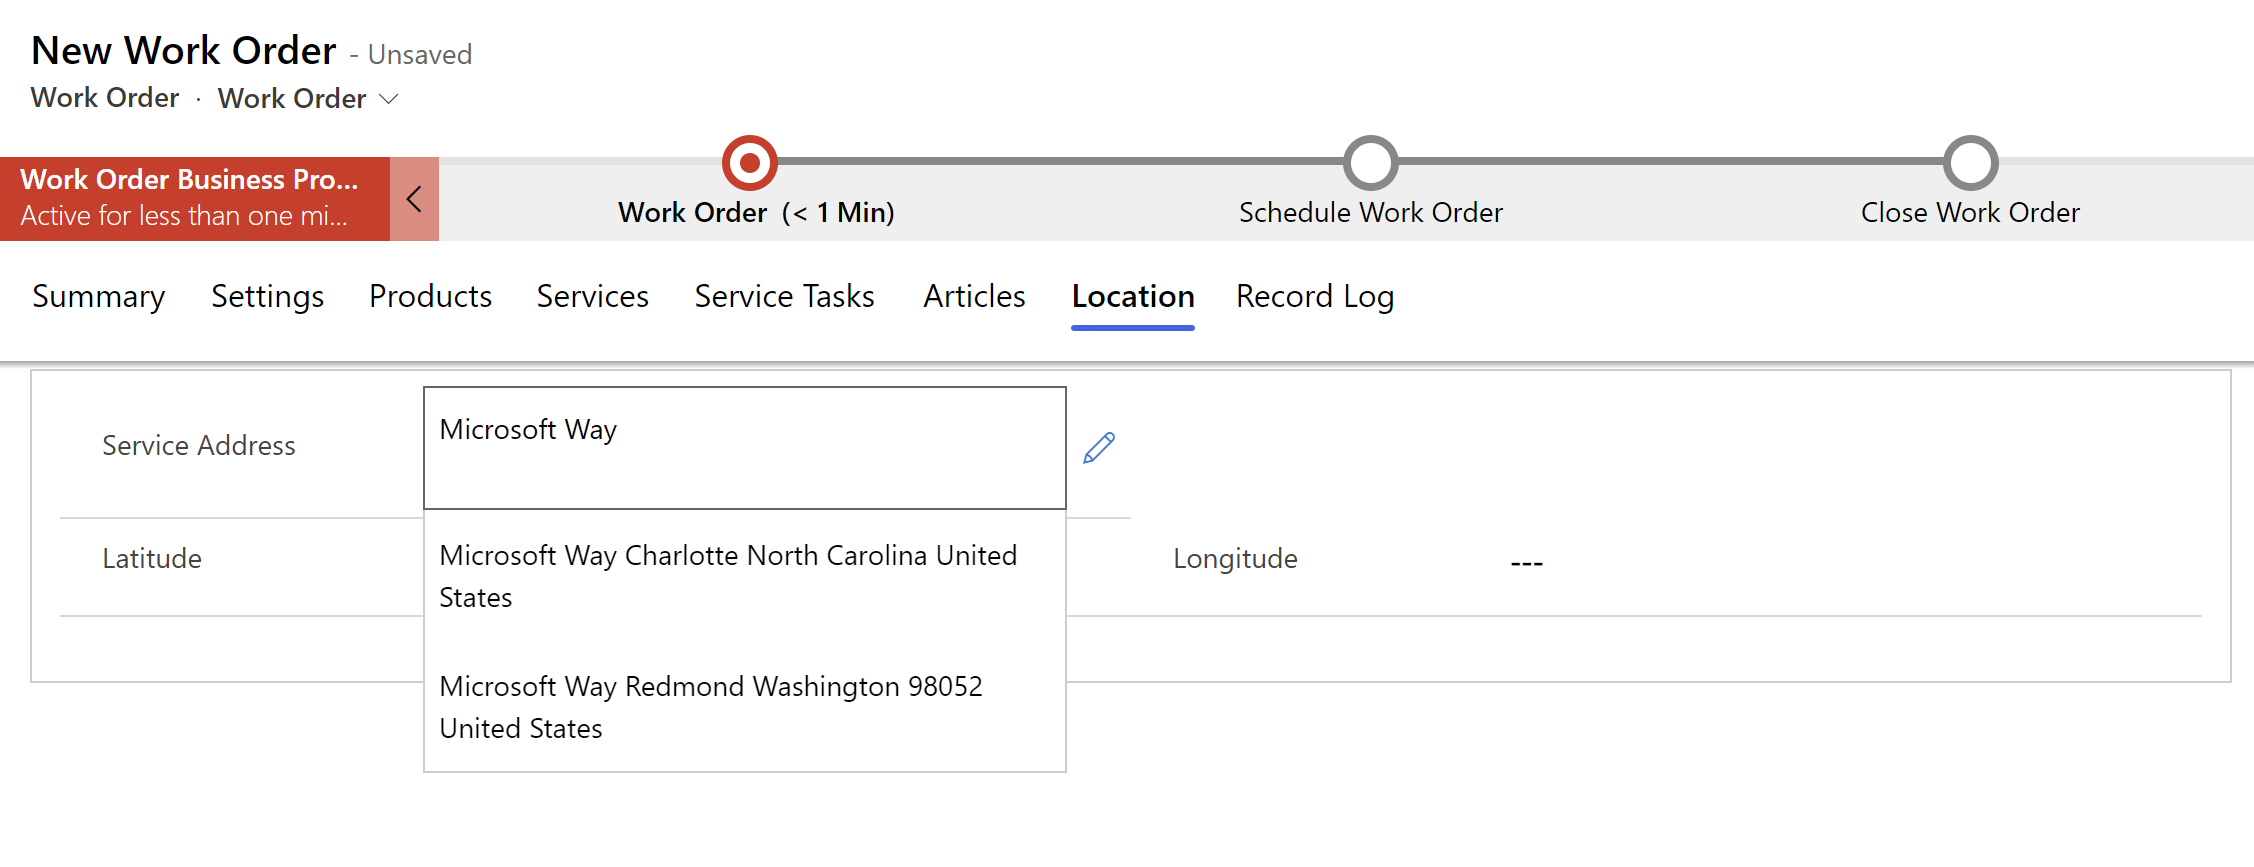 Снимок экрана нового заказа на работу в Field Service, показывающий варианты адреса в раскрывающемся меню.